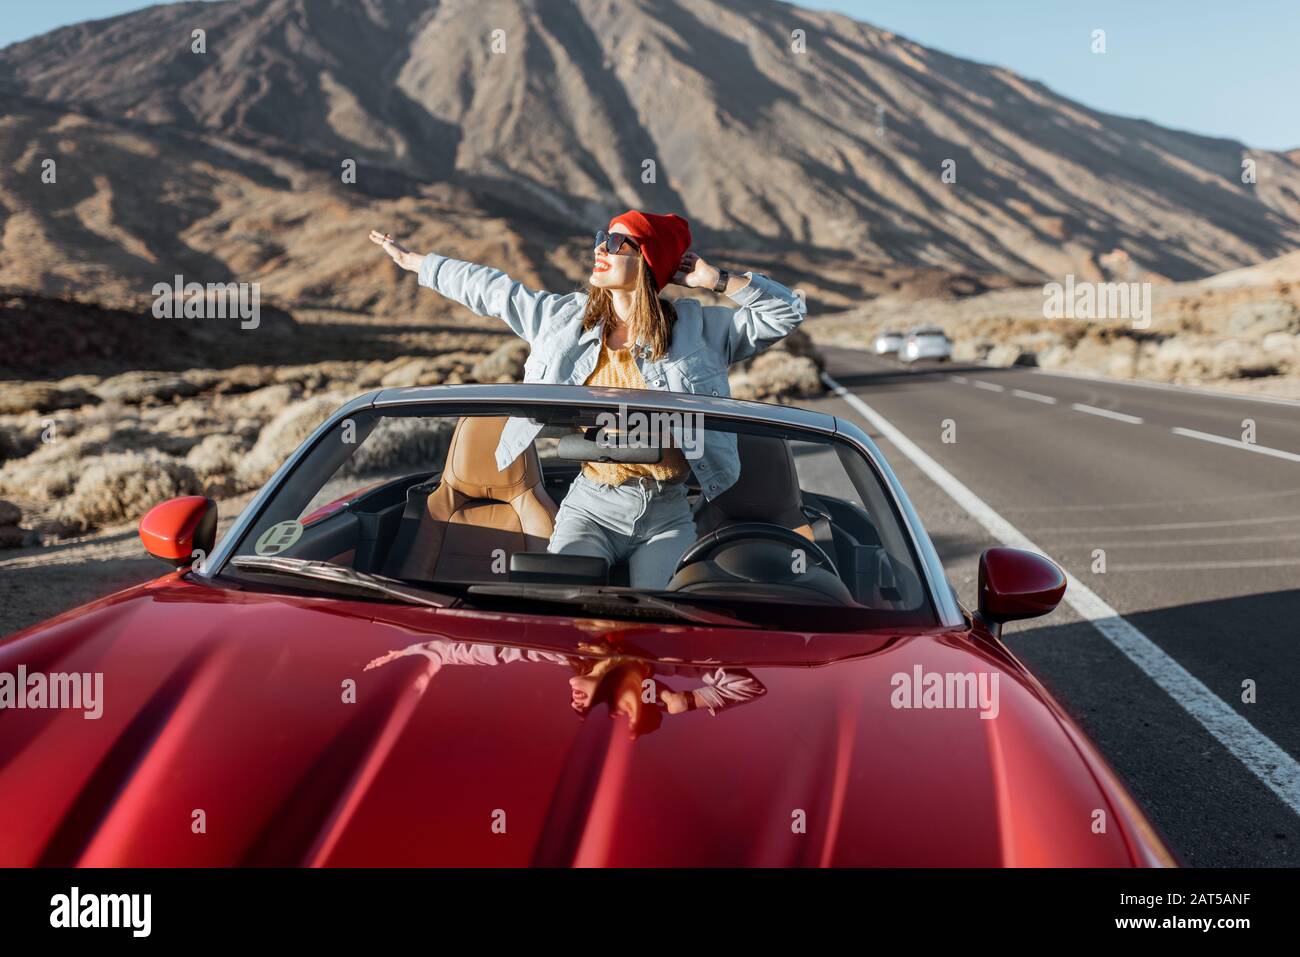 Unbeschwerte Frau, die sich beiläufig in Jeans und rotem Hut kleidete und die Fahrt auf der Straße im vulkanischen Tal genossen und die Hände von einem wandelbaren Auto am Straßenrand hob Stockfoto